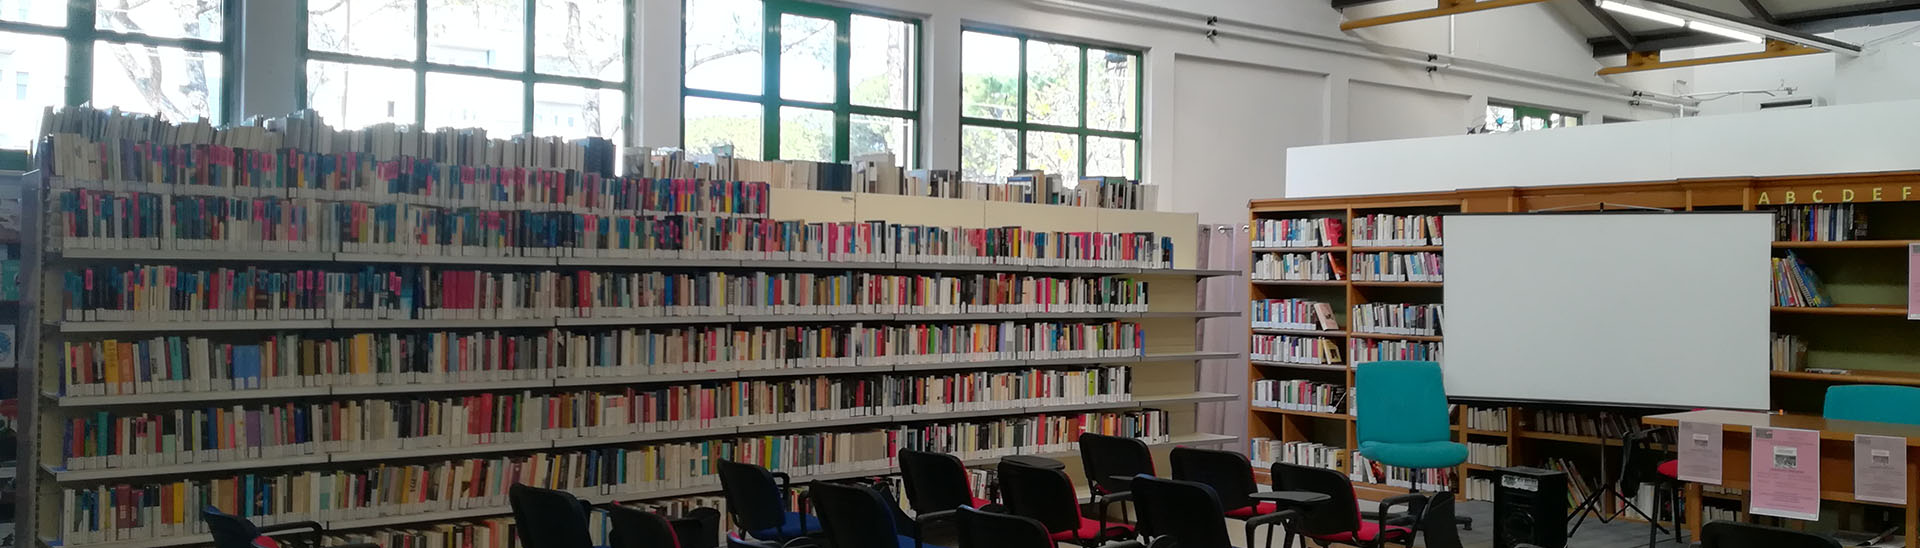 Biblioteca Laboratorio delle Idee 'Falcone e Borsellino' di Pescara